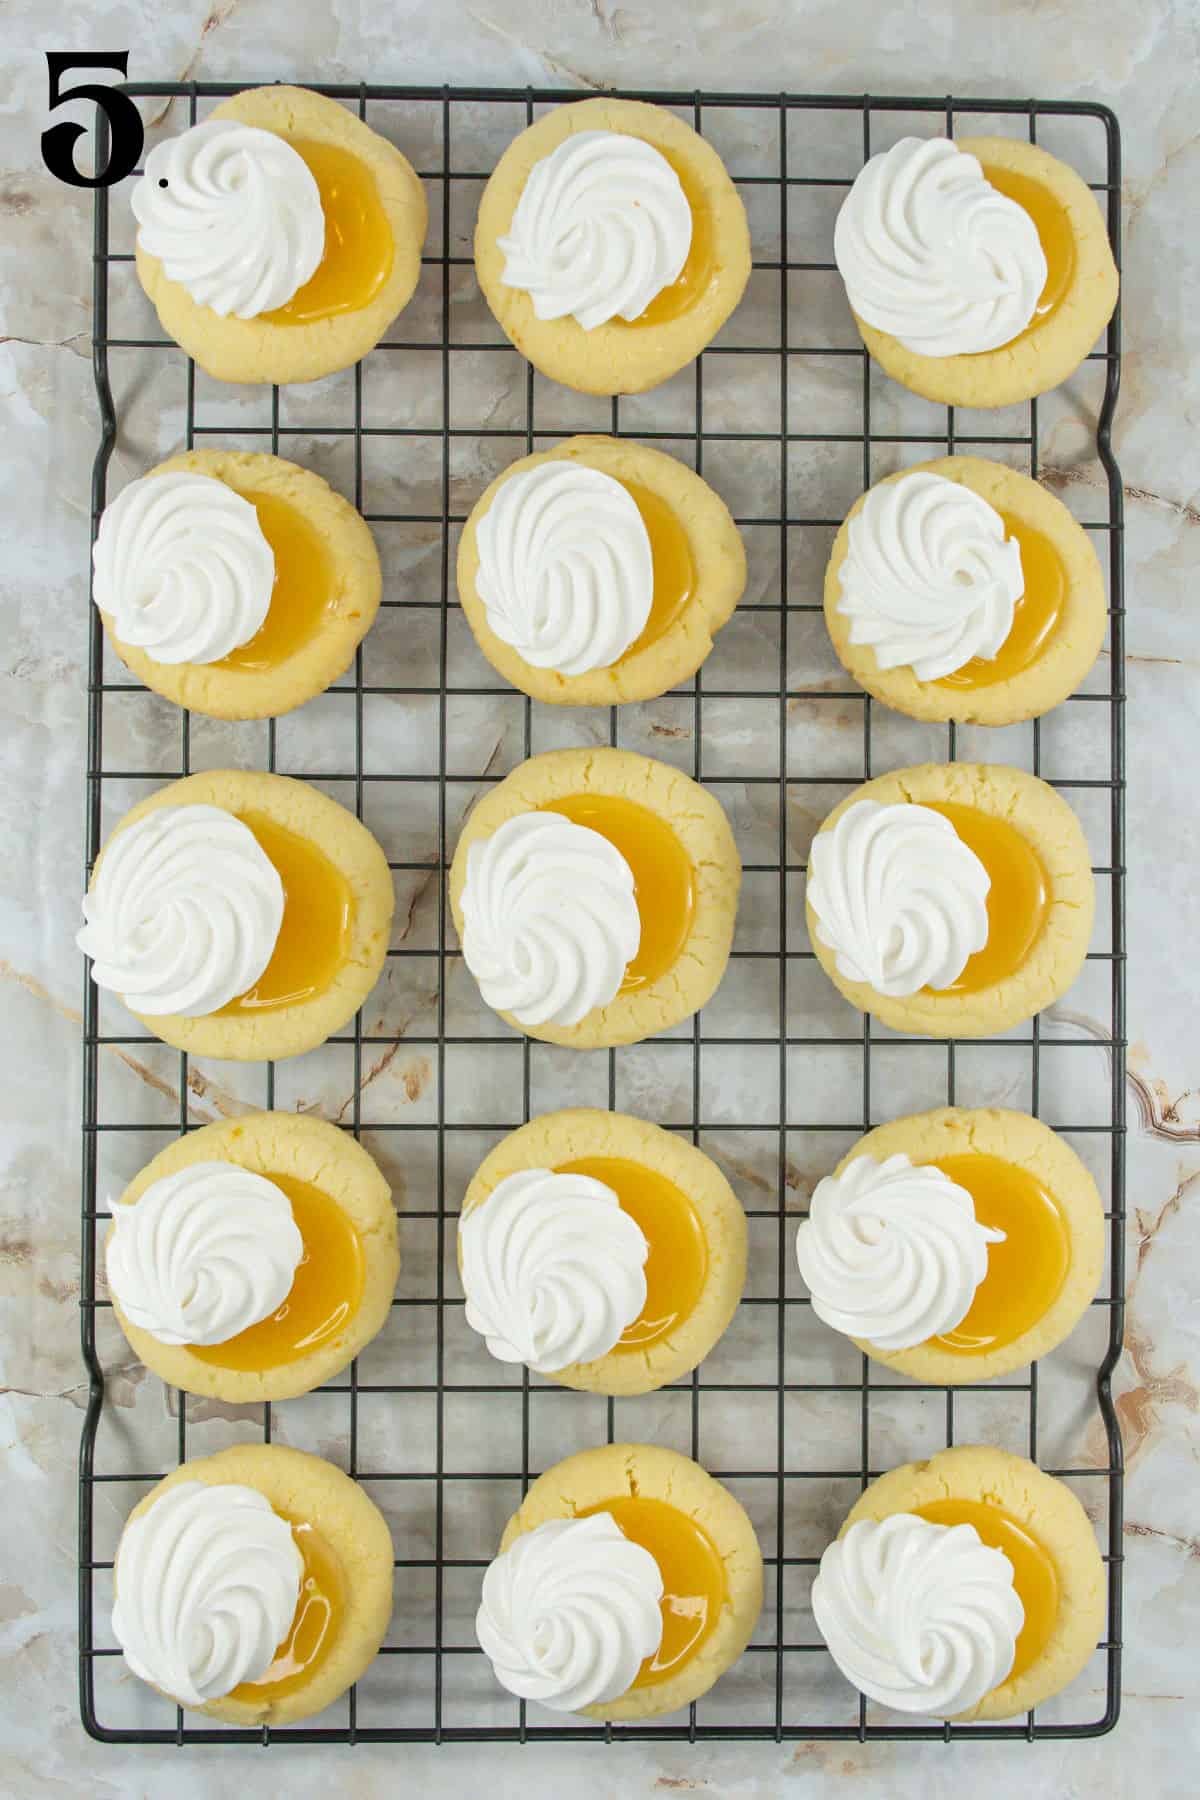 How to Make Lemon Meringue Cookies Step 5 - Baked cookies with lemon curd and merinuge.